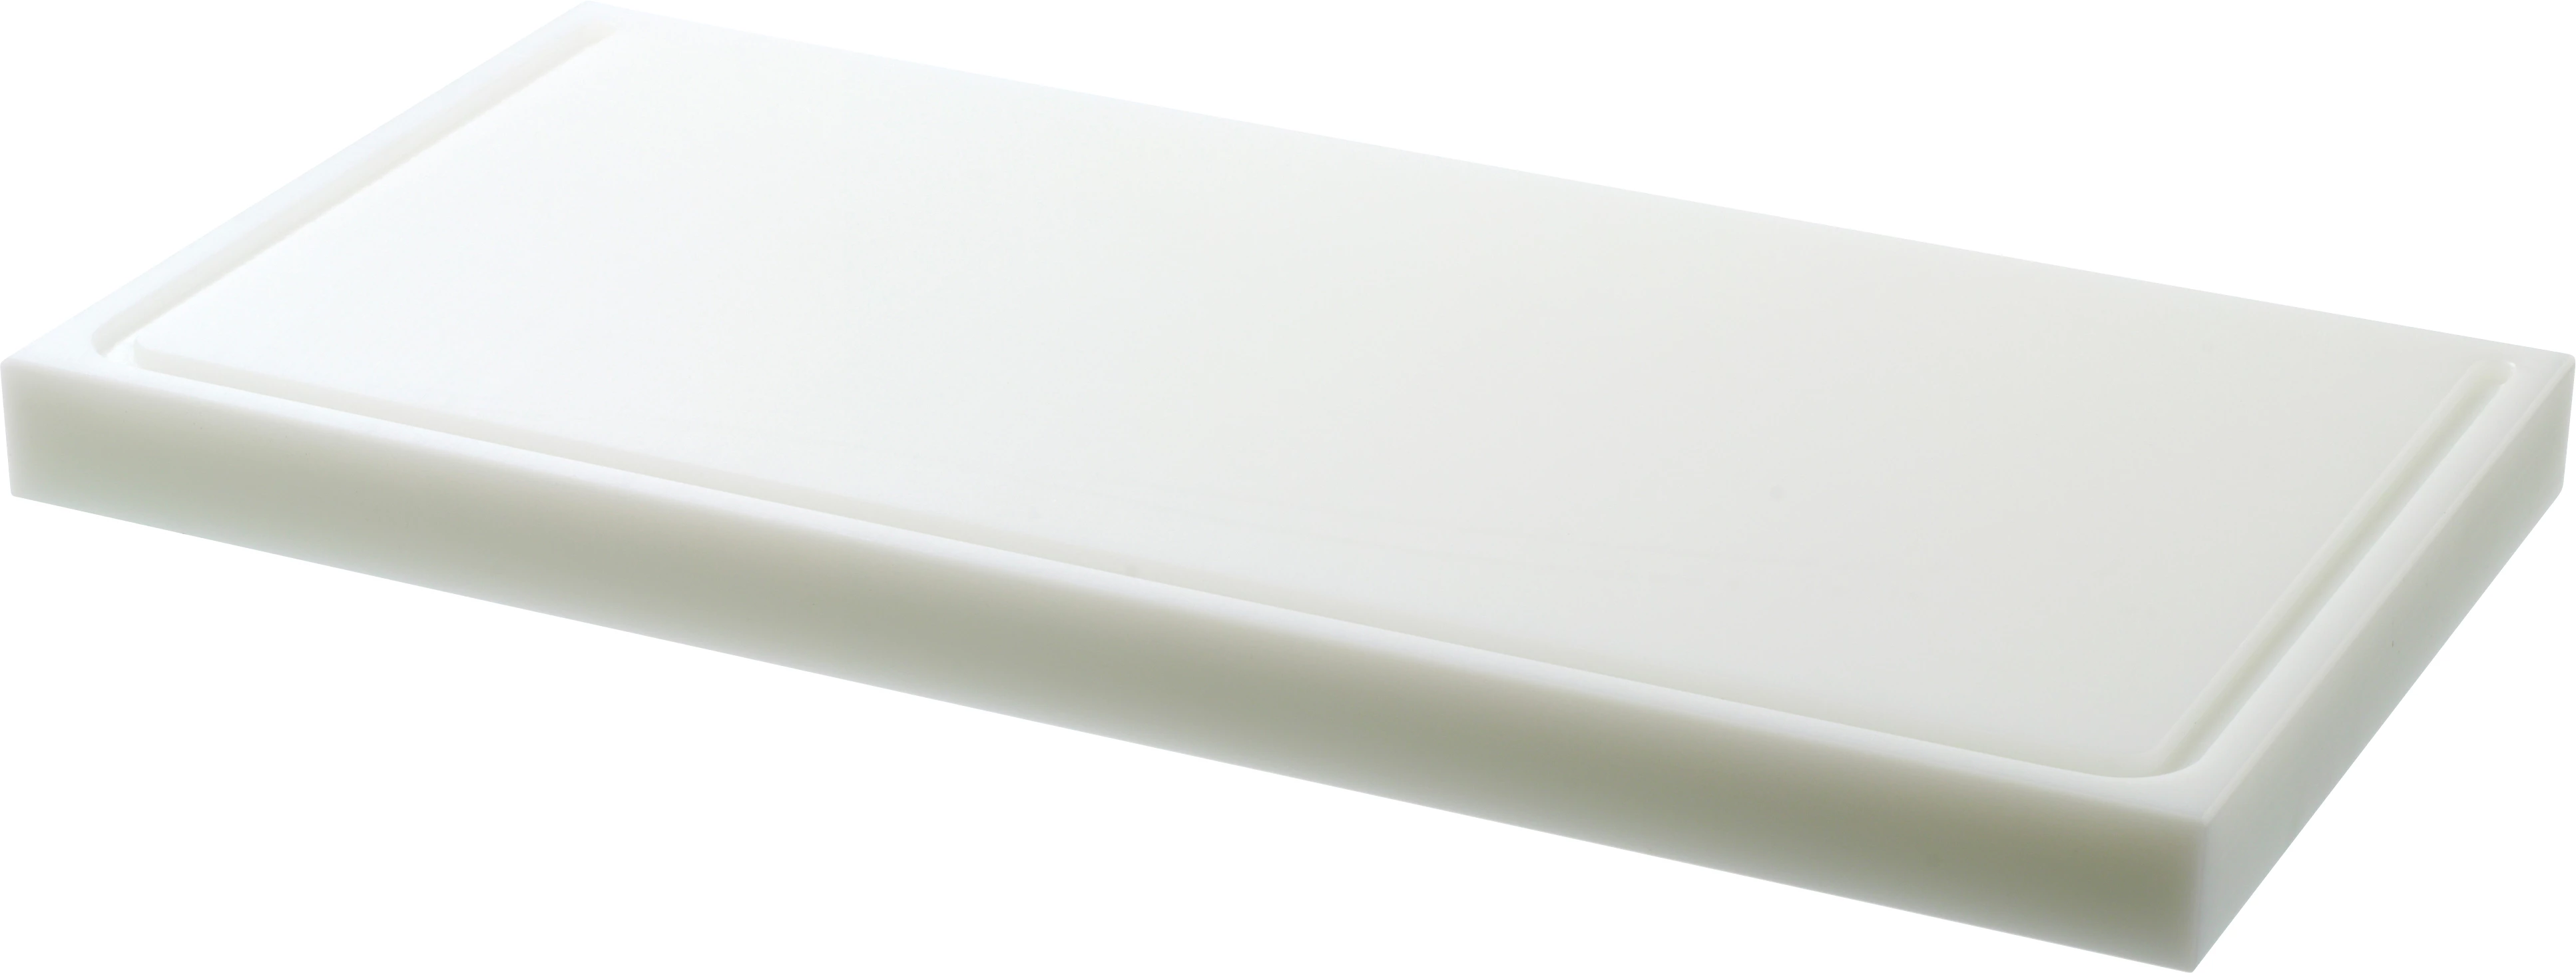 Euroboard skæreplanke, hvid, 60 x 30 x 4 cm